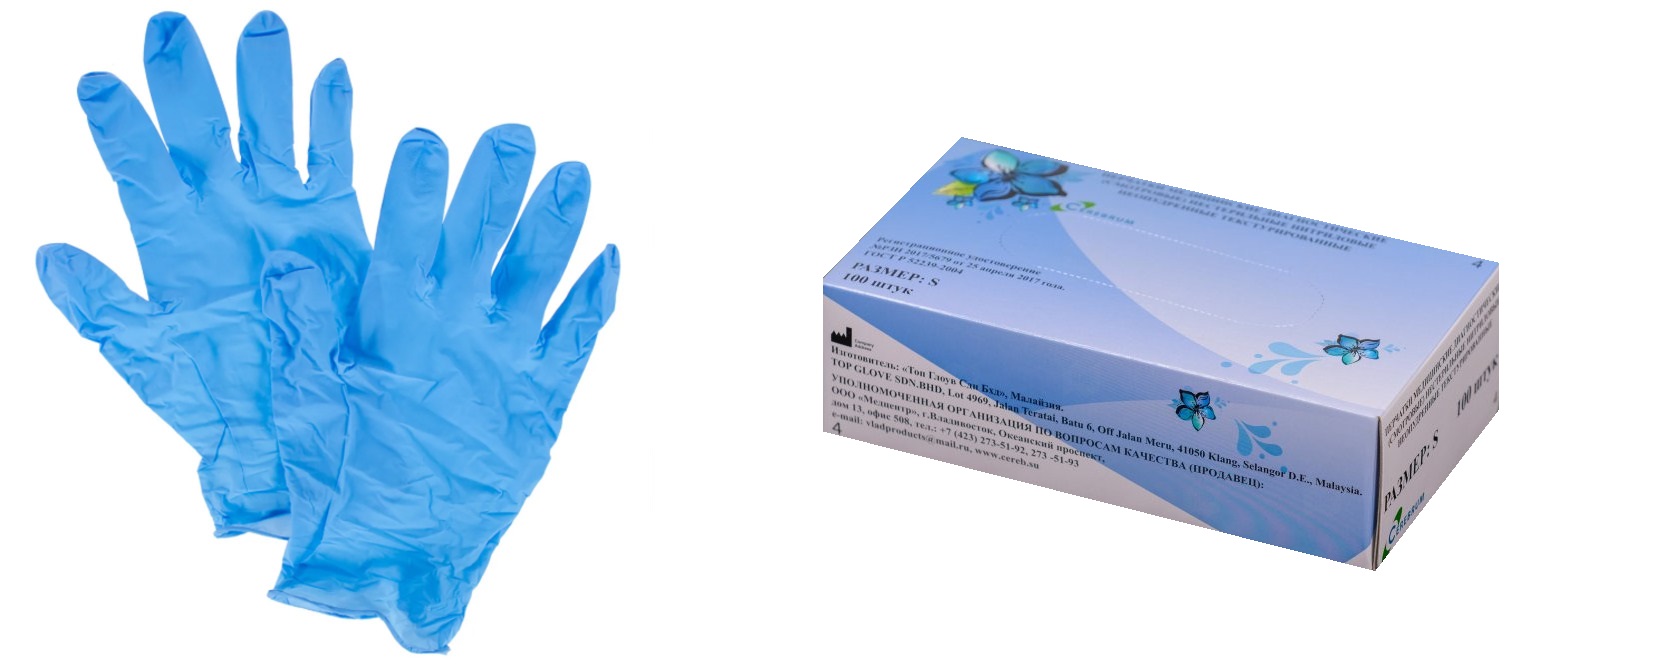 Перчатки медицинские диагностические (смотровые) нестерильные нитриловые неопудренные / с полимерным покрытием текстурированные.  Размер XS. Голубого цвета.